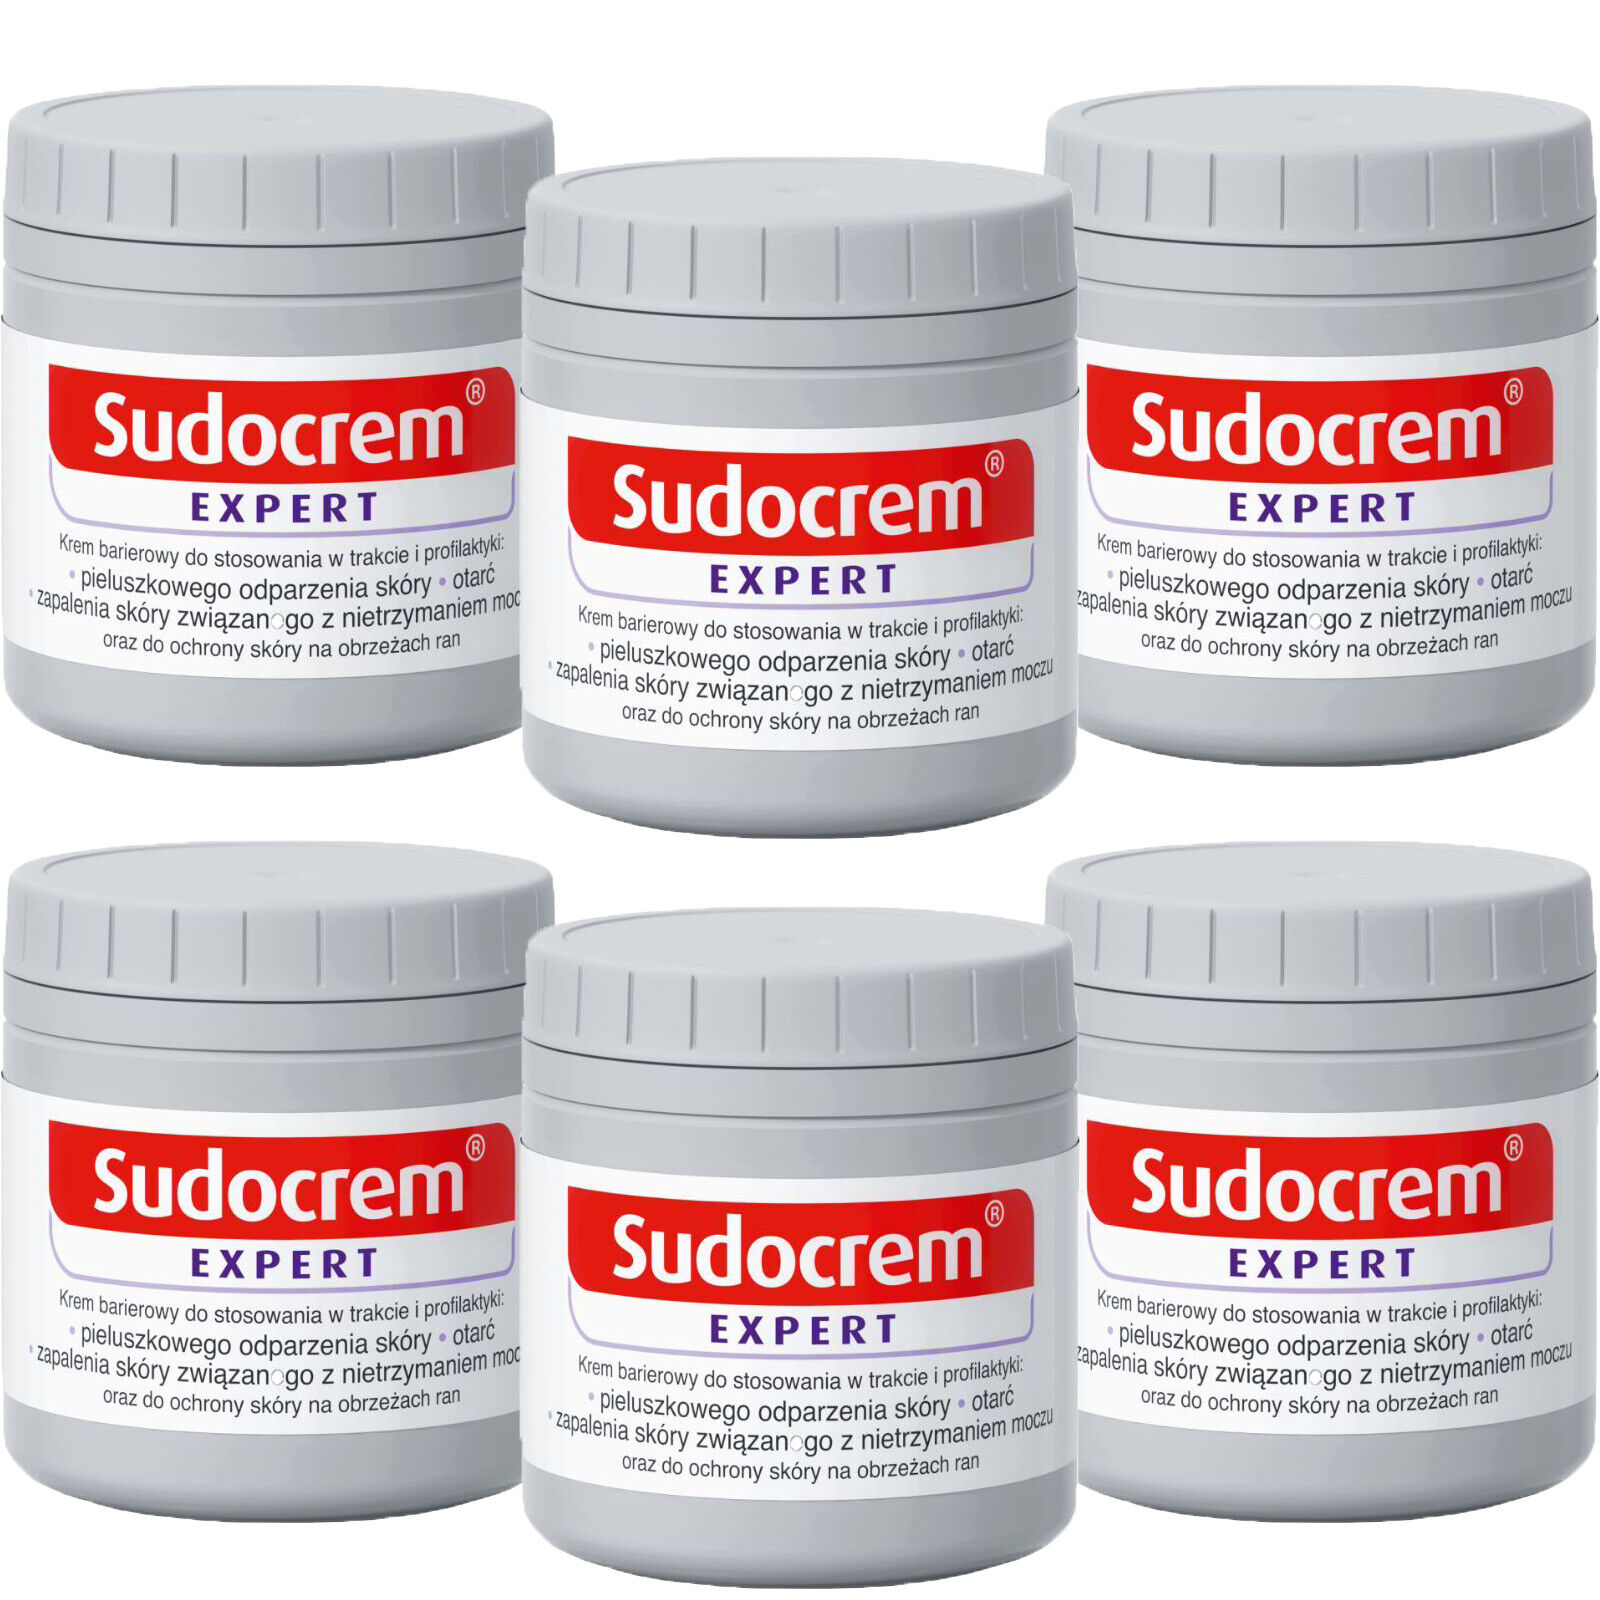 SUDOCREM EXPERT Antiseptic Healing Cream 60gX6 EXP.04/2023 USA Free Shipping Sudocrem 125g